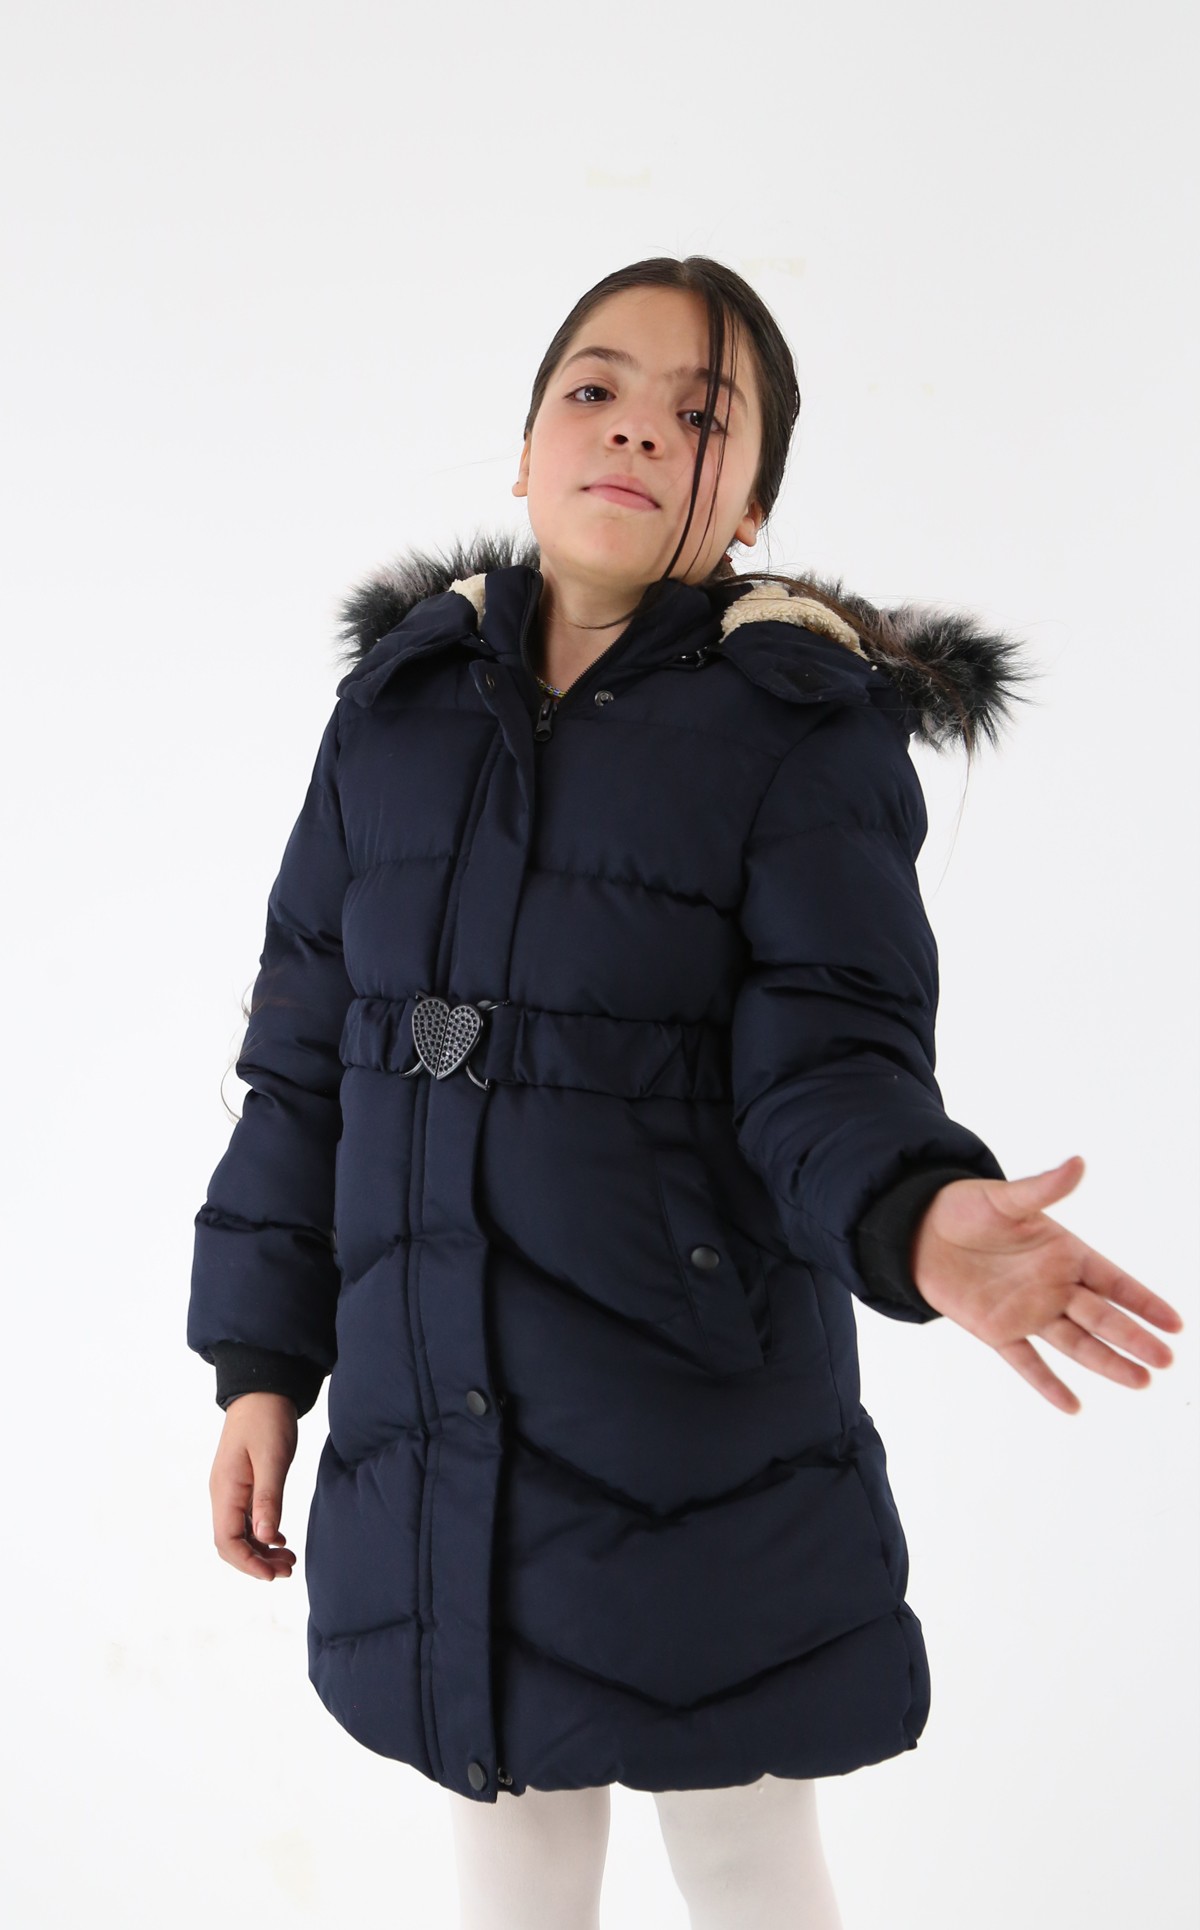 Polarlı Kışlık Kız Çocuk Montu - Frostine - Lacivert